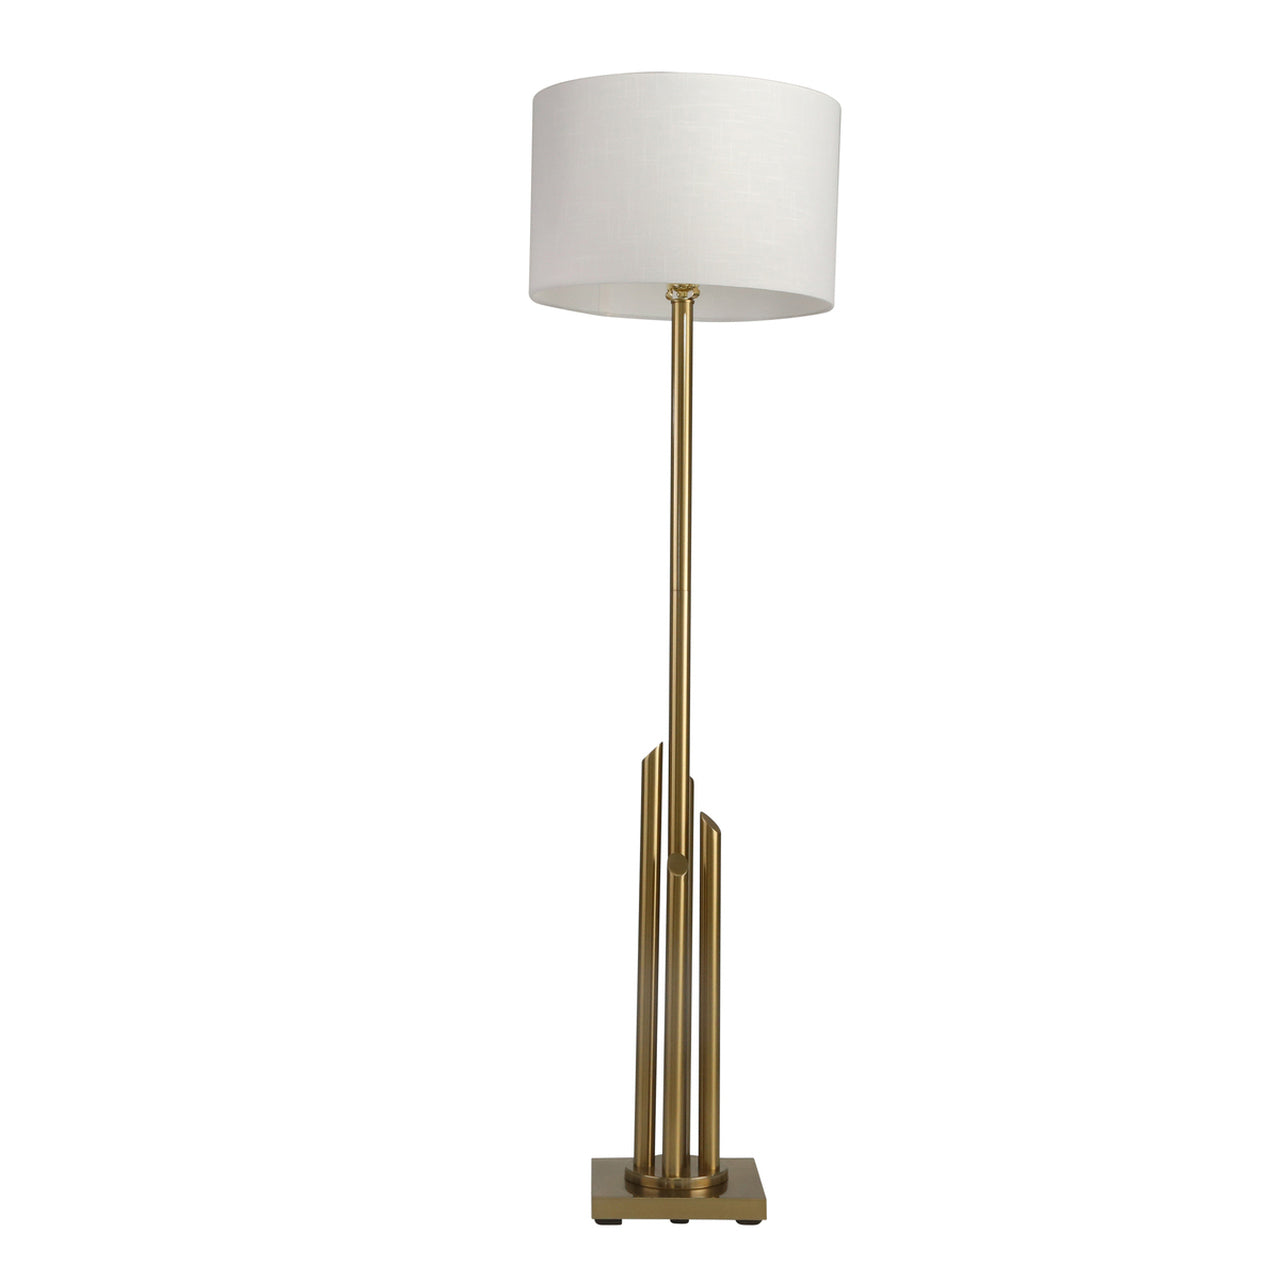 METAL 63" ART DECO FLOOR LAMP, GOLD - KD / -30%